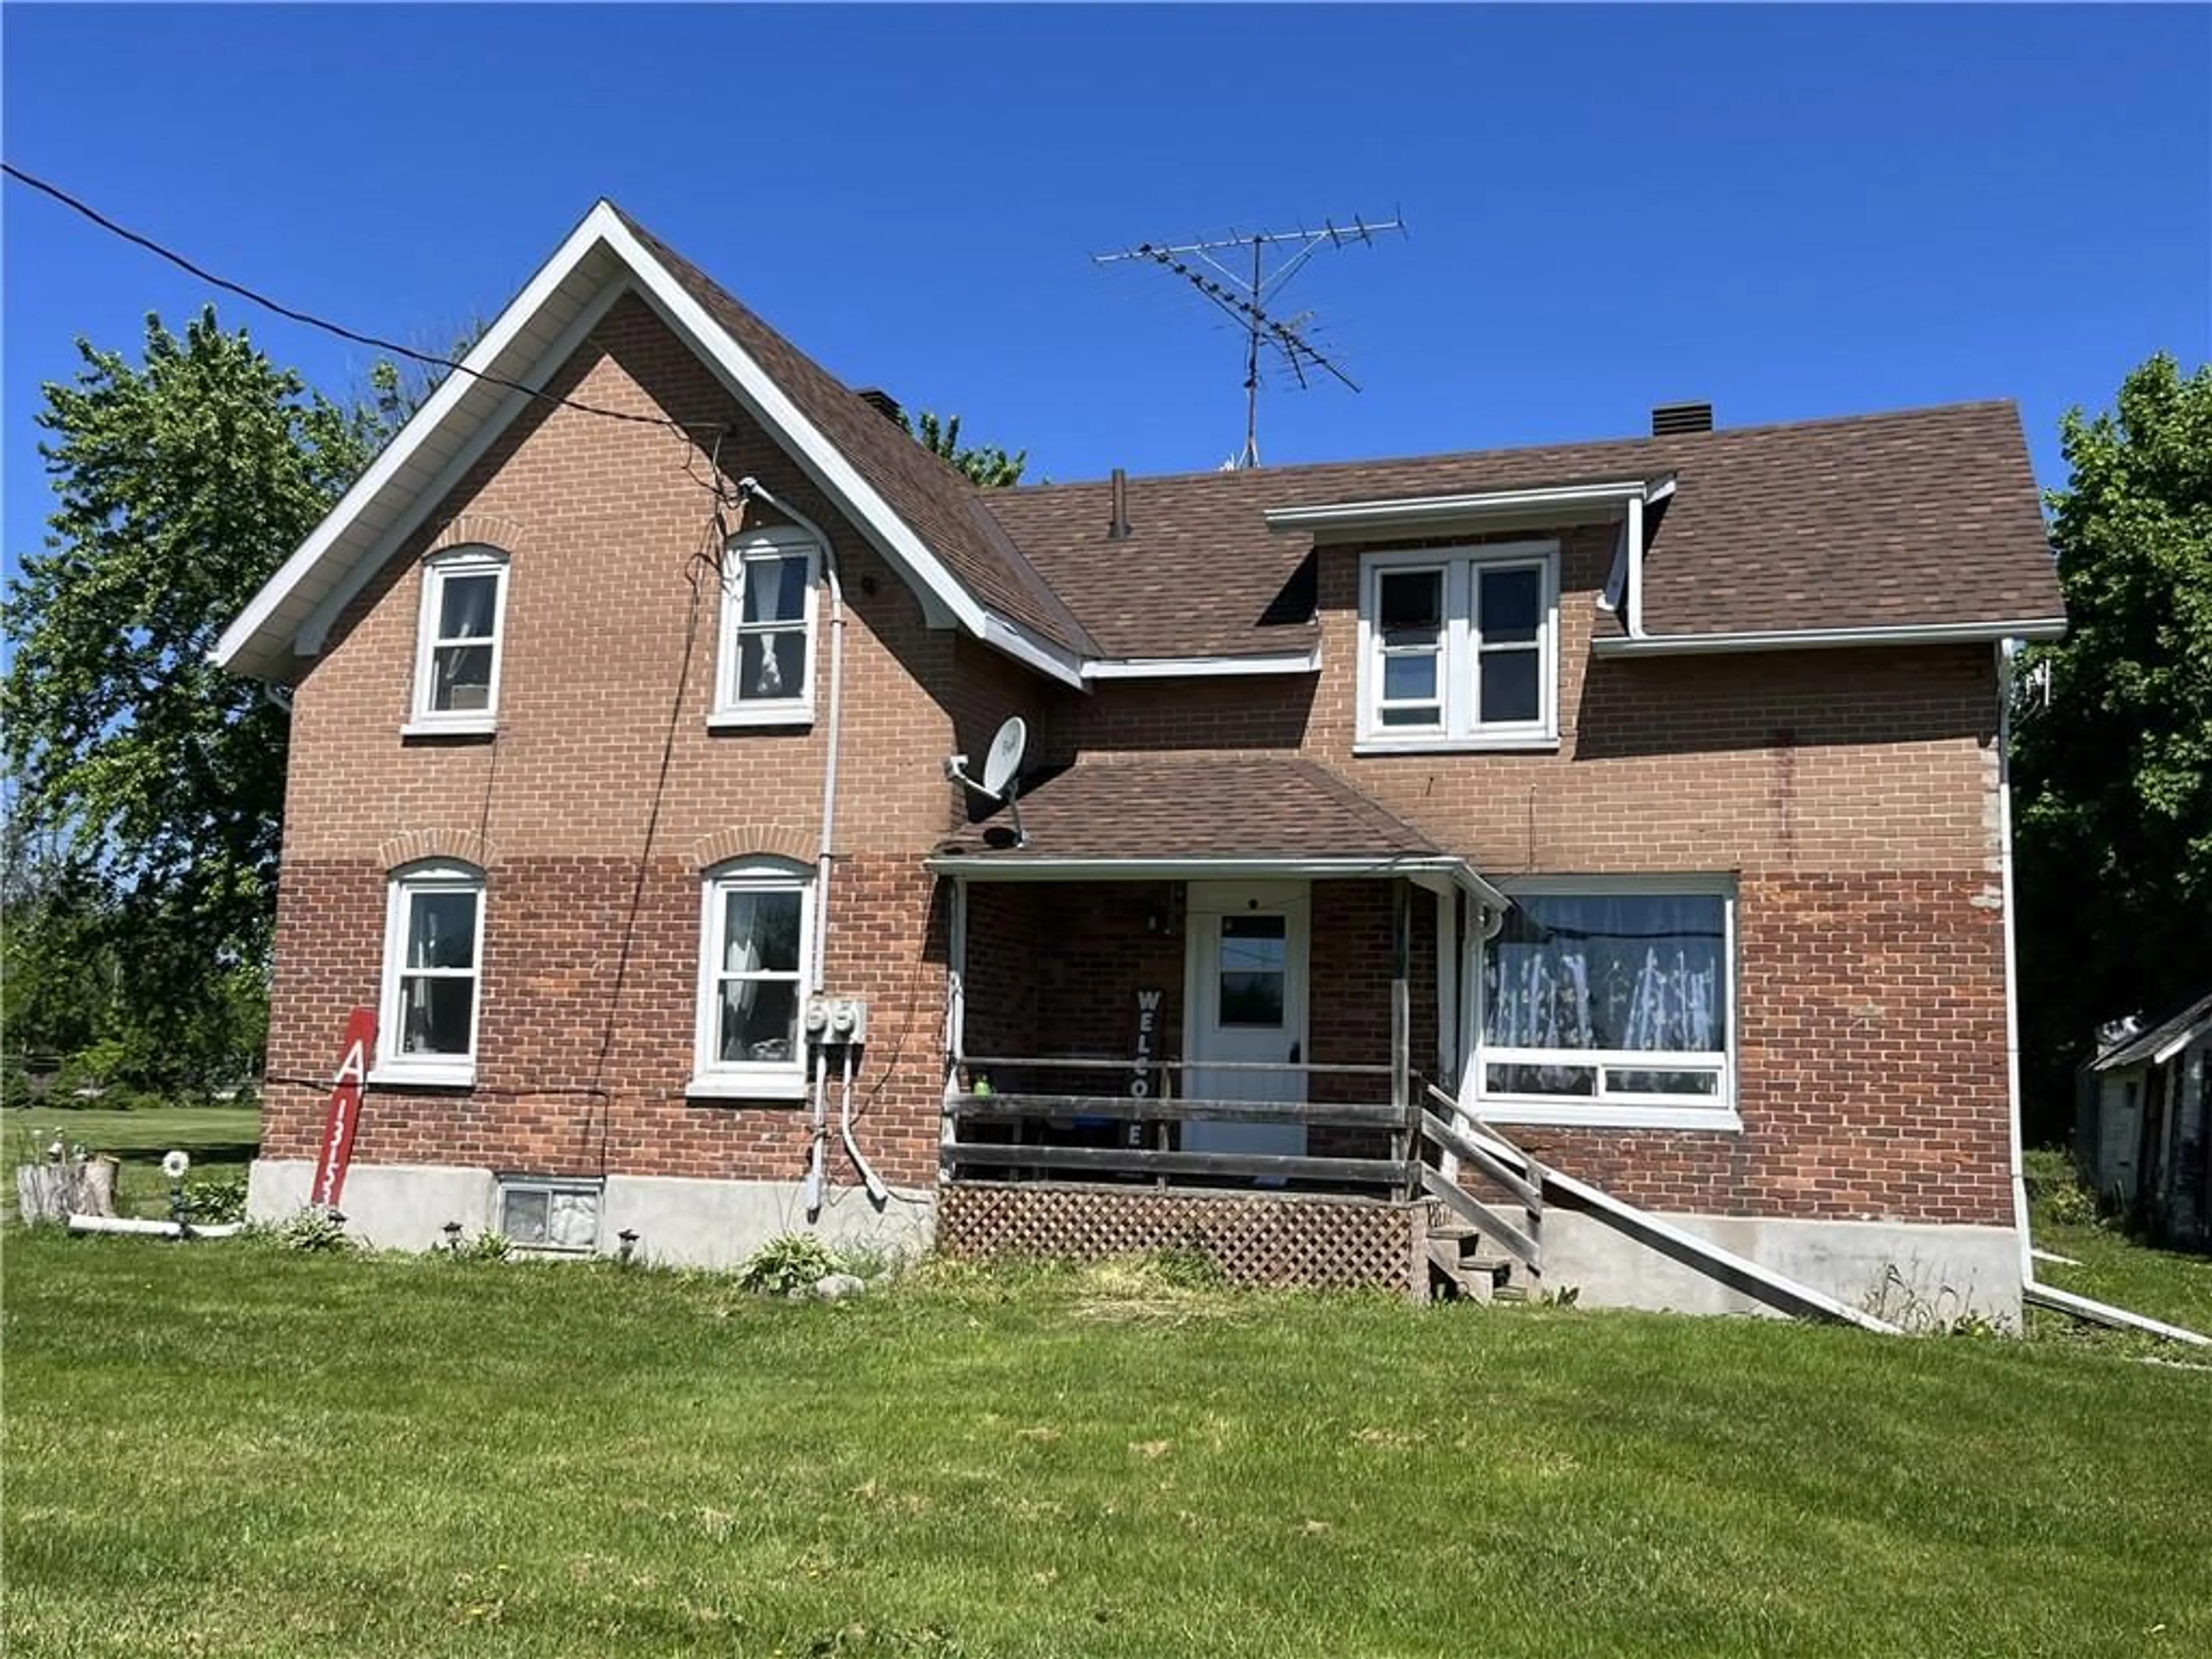 Frontside or backside of a home for 13153 RIVERSIDE Dr, Morrisburg Ontario K0C 1X0